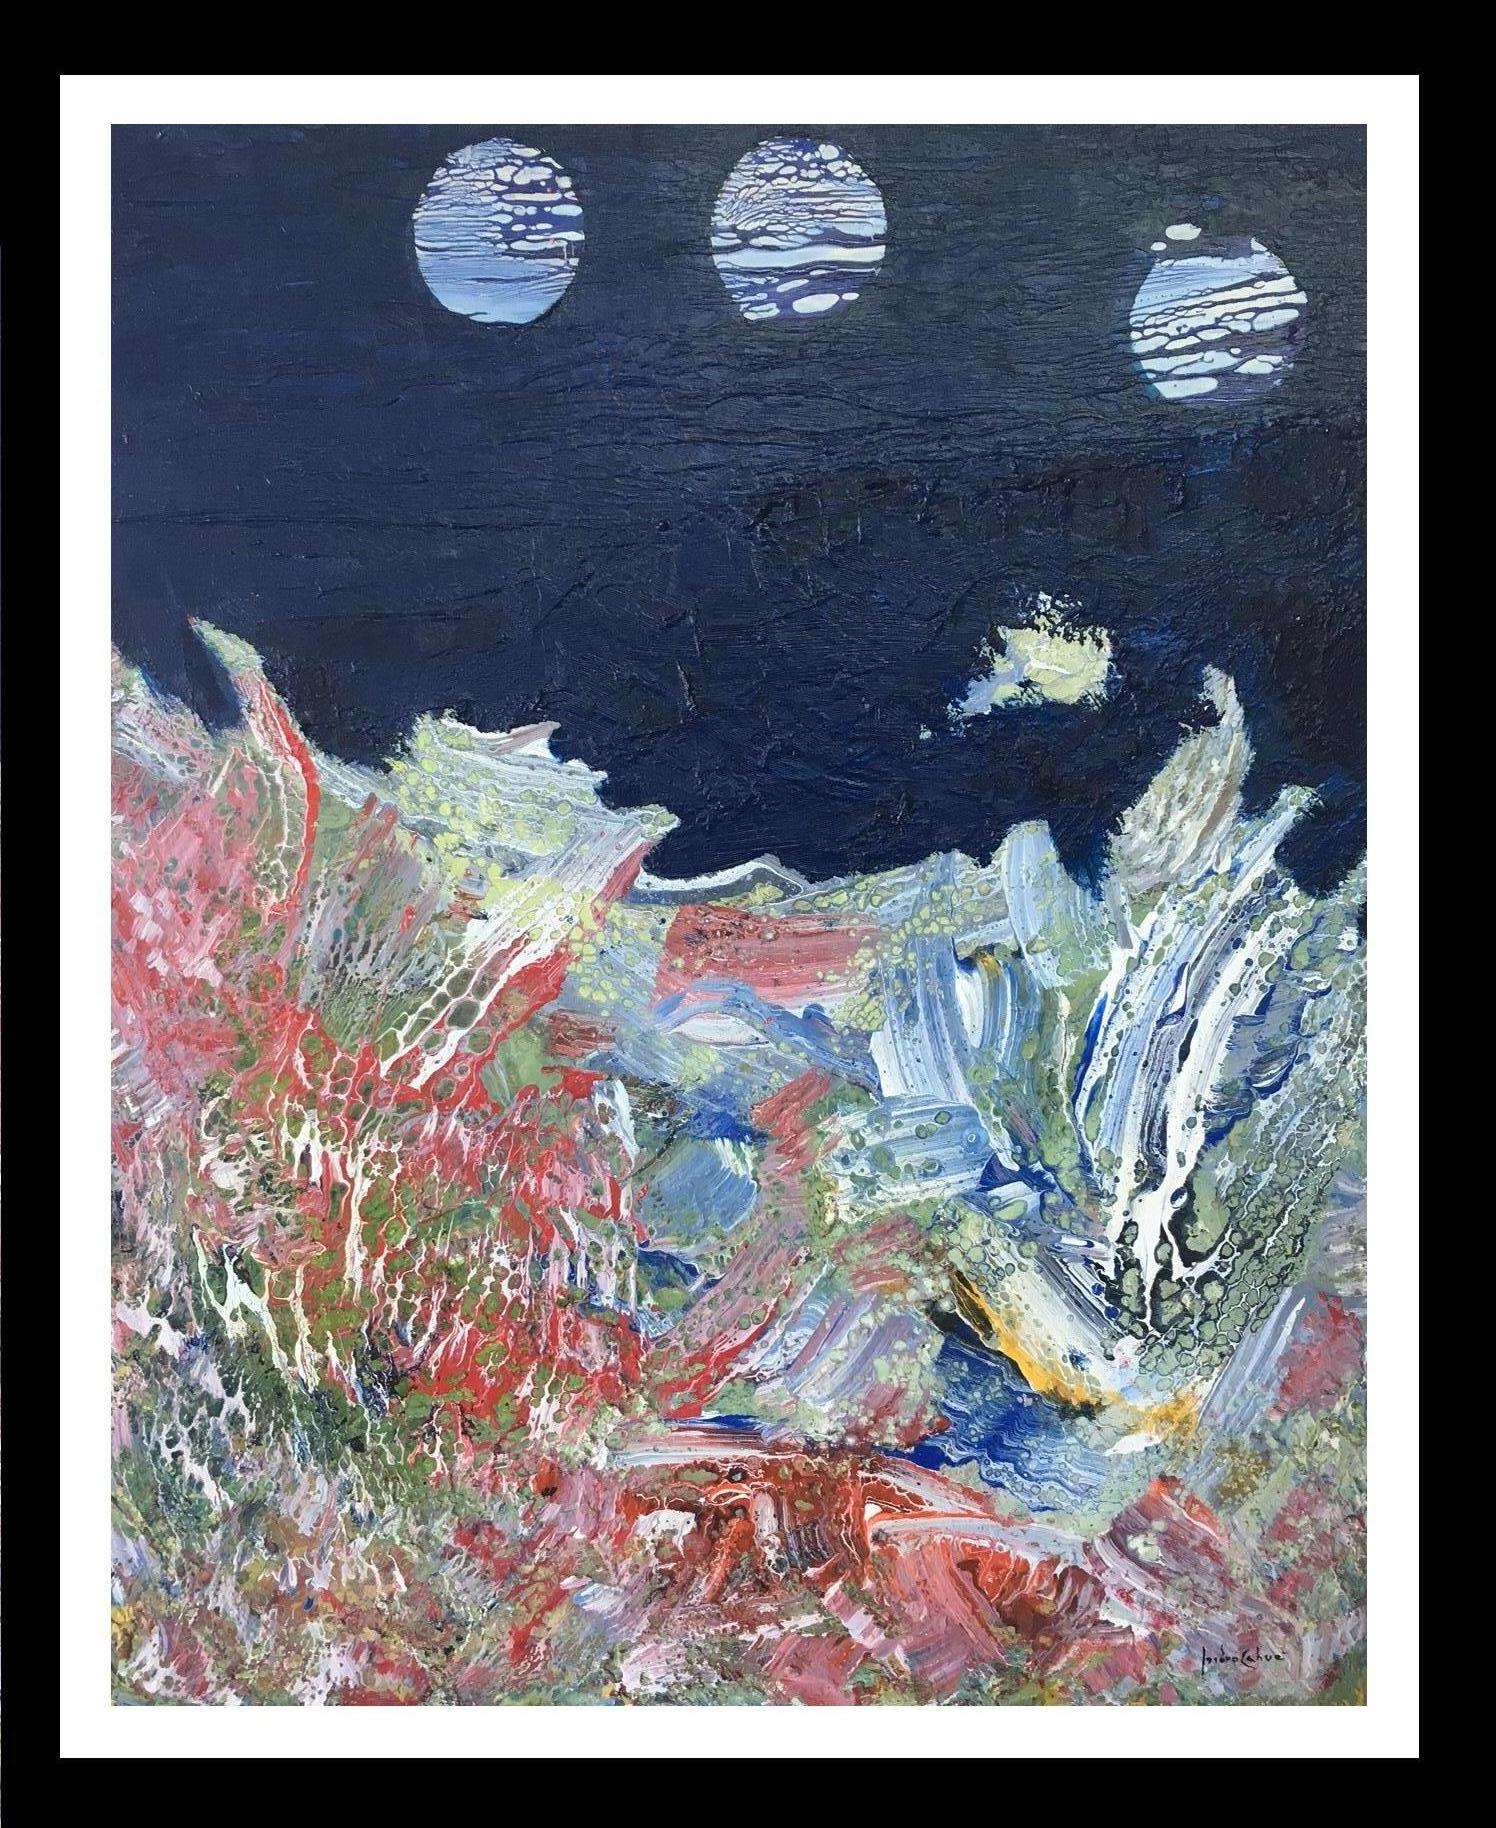  I. Cahue- La mer et la lune. Peinture abstraite originale sur toile acrylique. - Painting de Isidro Cahue